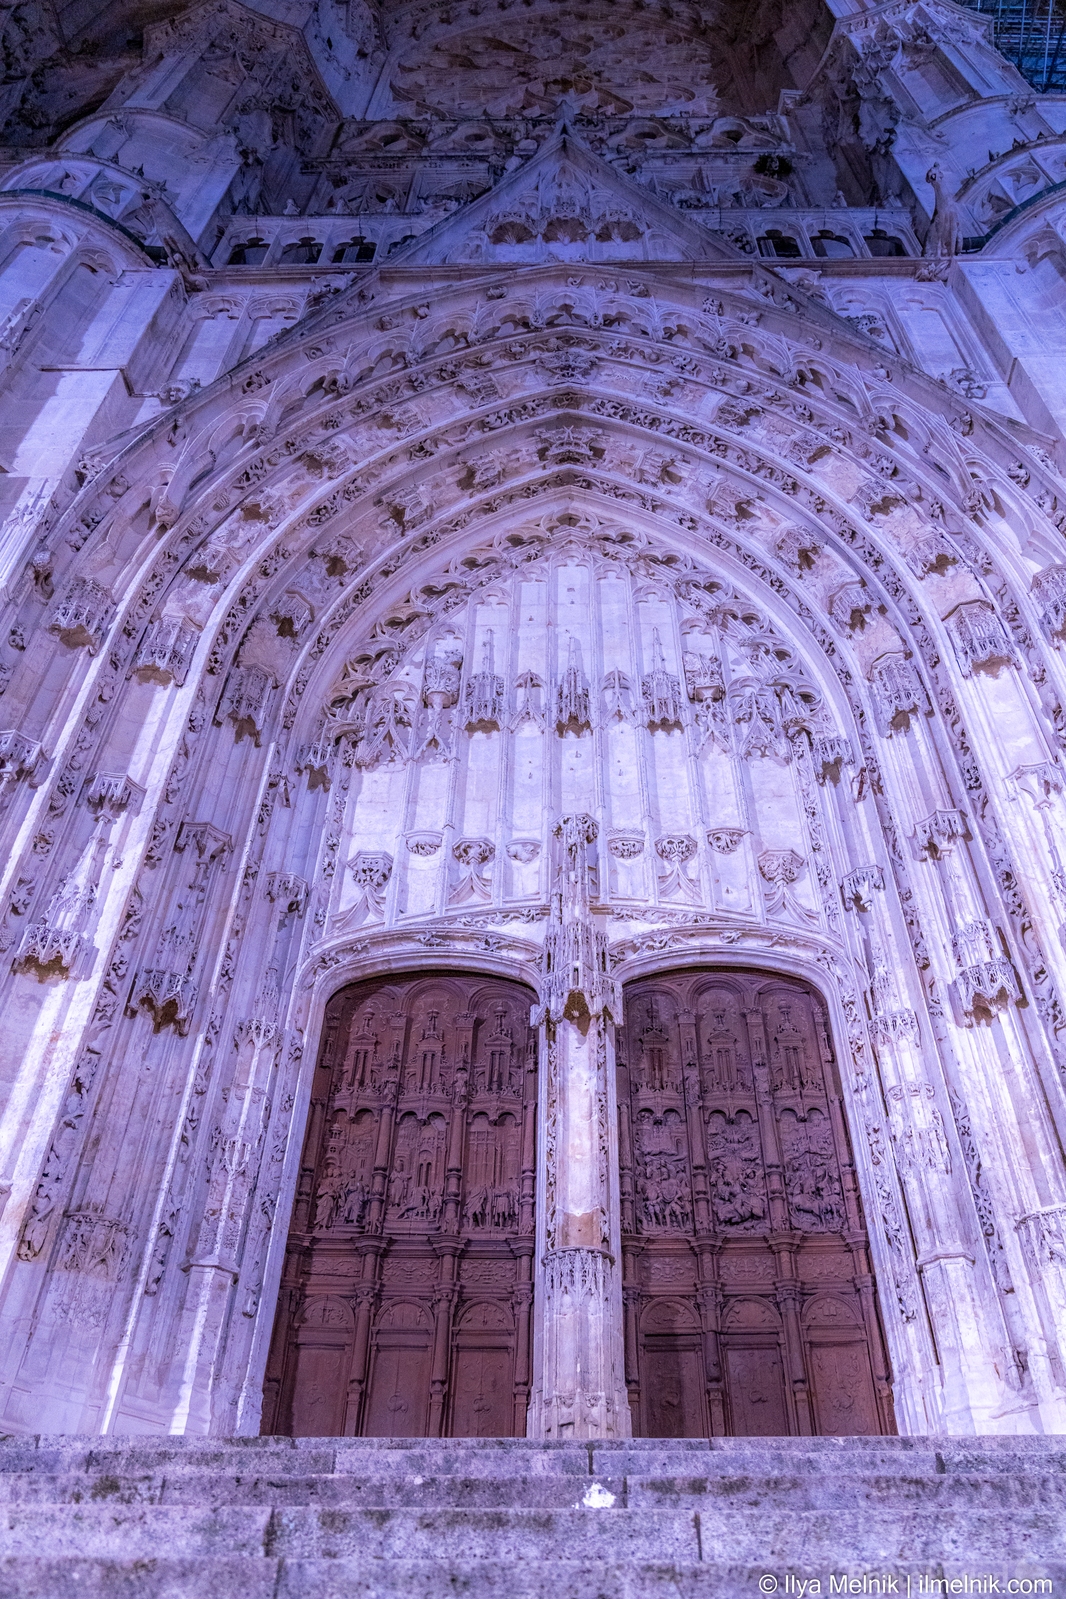 Image of Cathédrale Saint-Pierre de Beauvais by Ilya Melnik